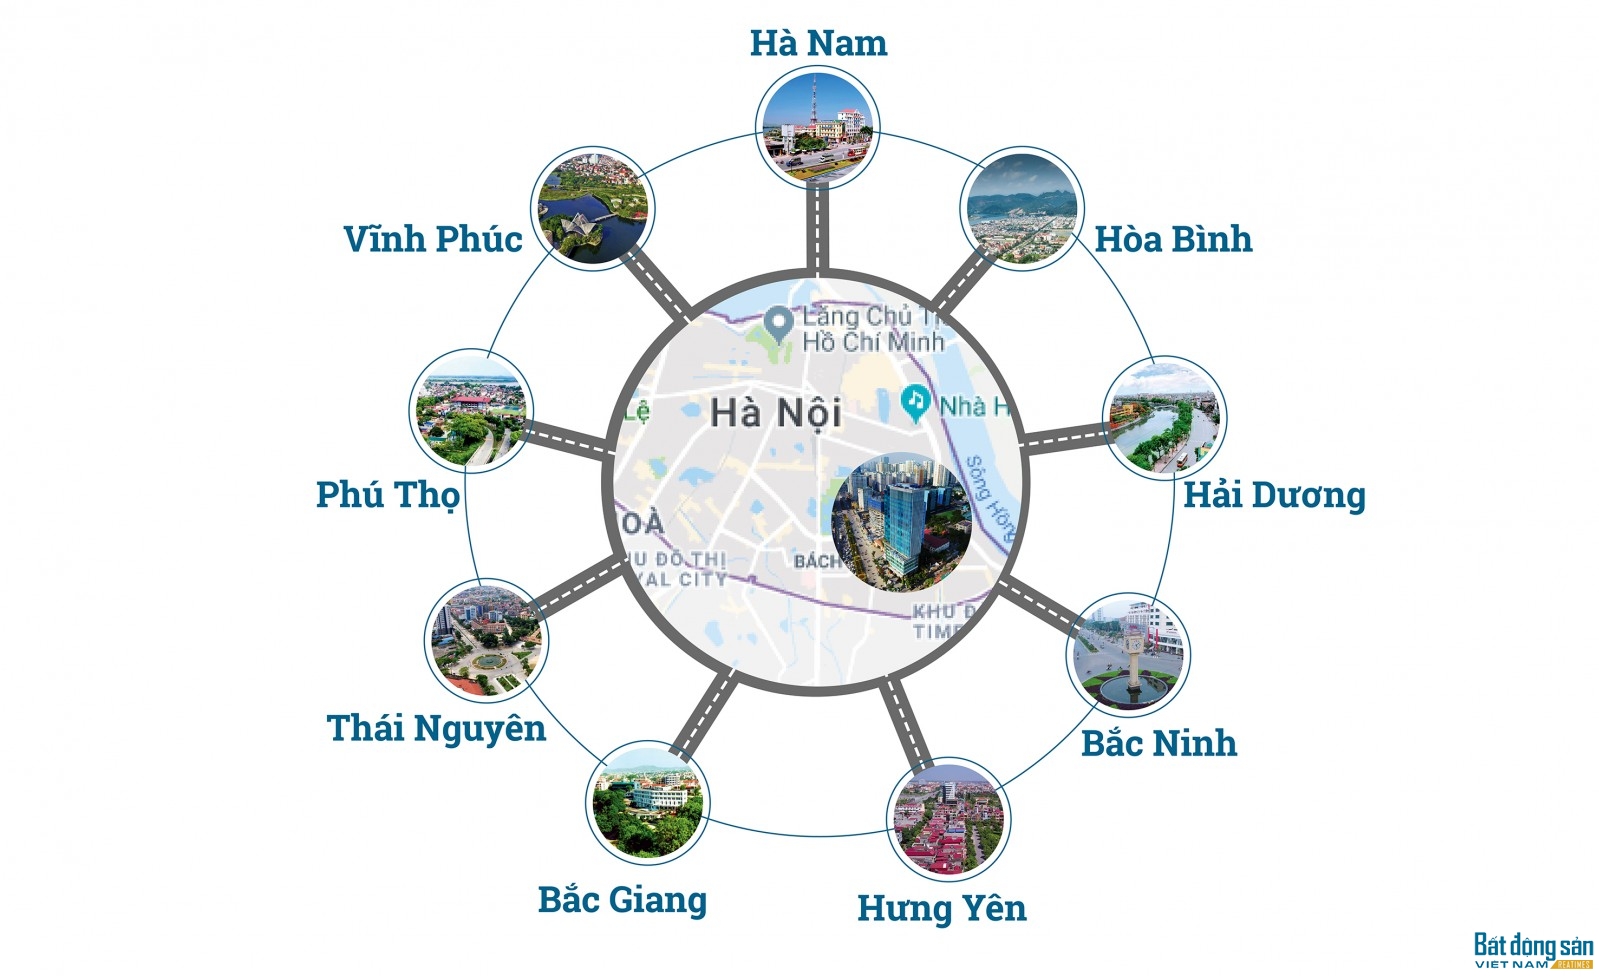  thị trường bất động sản Hà Nội cũng đang có sự bứt phá mạnh mẽ từ nội đô ra ngoại thành và xa hơn nữa là các vùng Thủ đô.